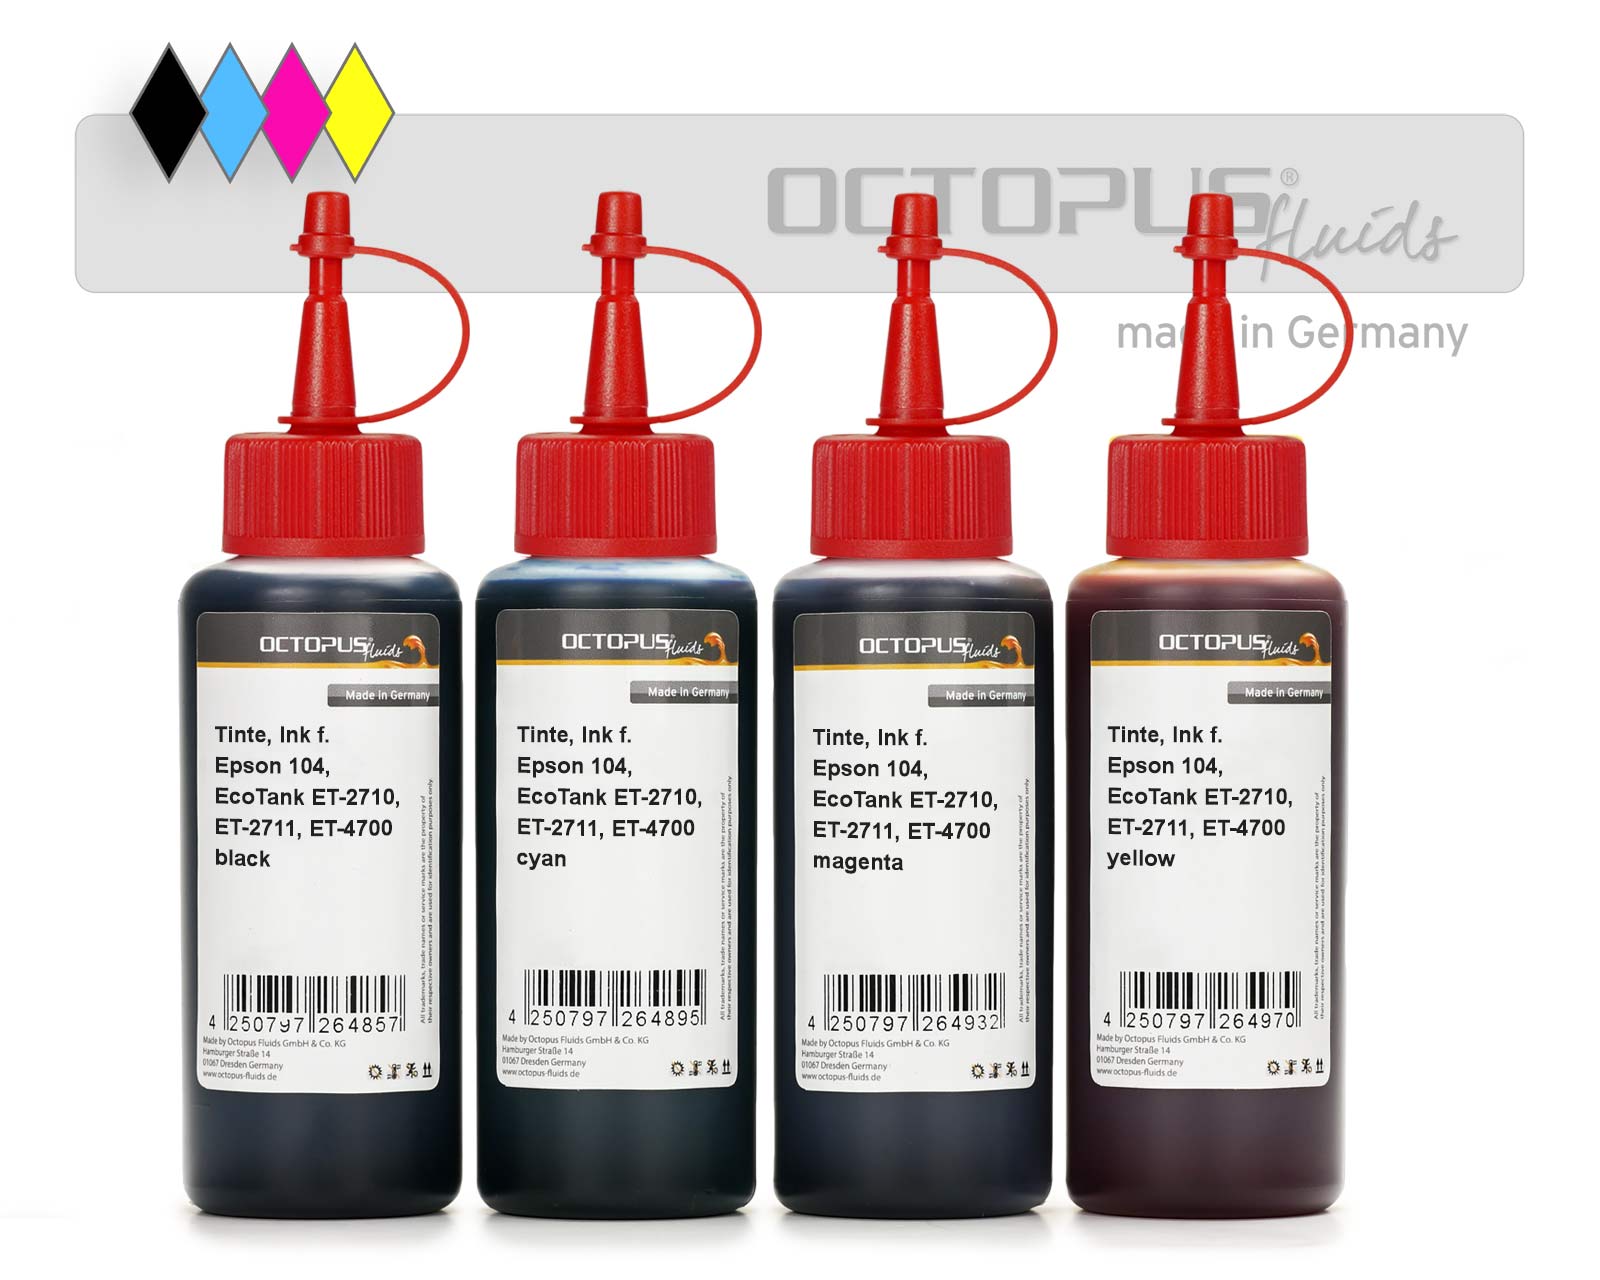 Refill ink kit for Epson 104, EcoTank ET-2710, ET-2711, ET-4700 CMYK